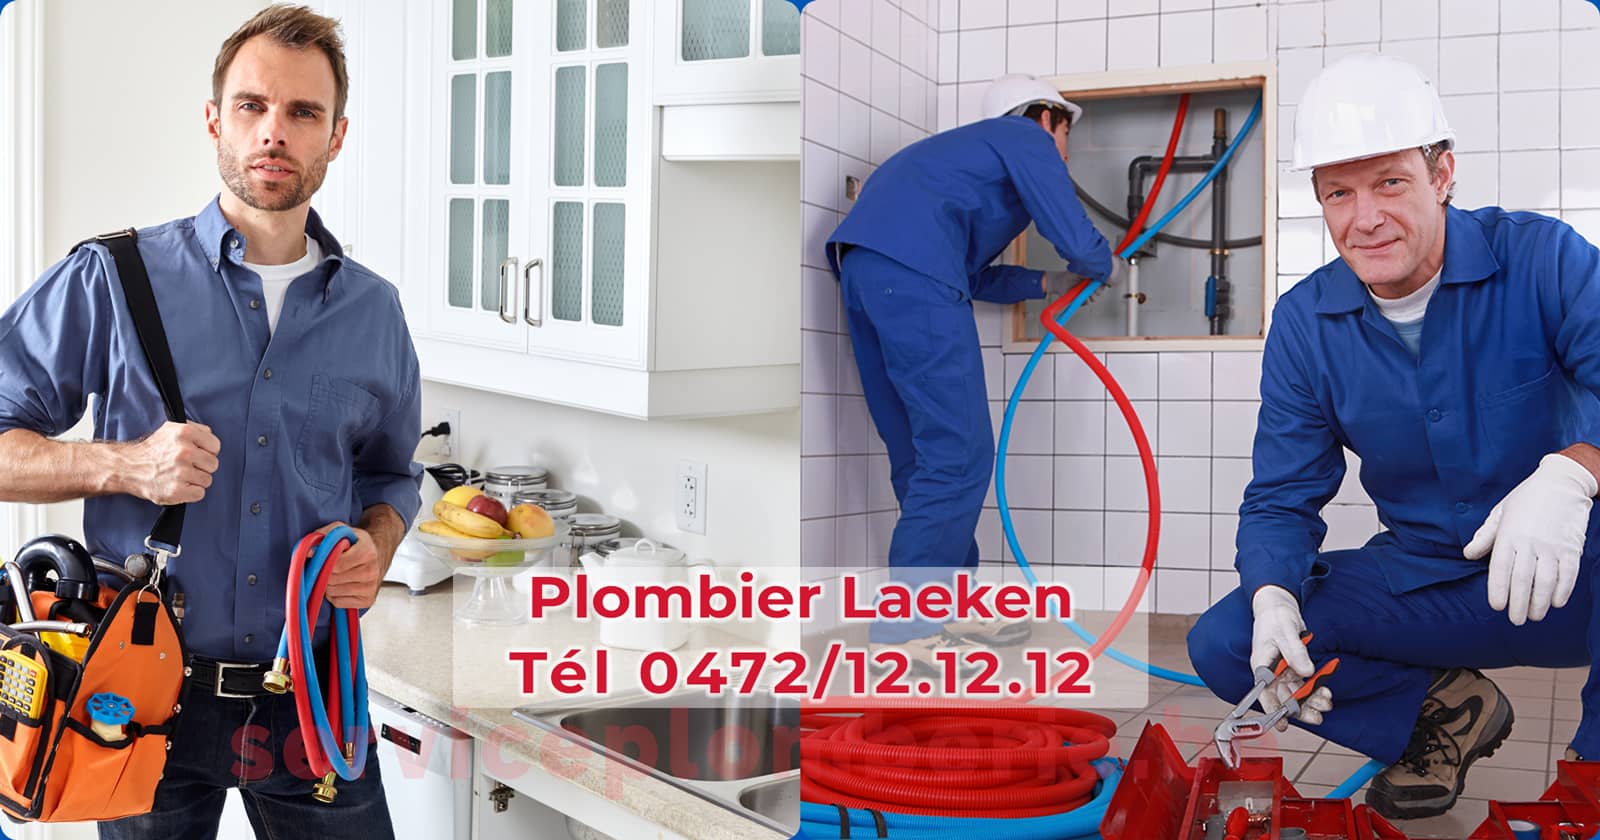 Plombier Laeken Agréé Professionnel Service Plomberie Tél 0472/12.12.12